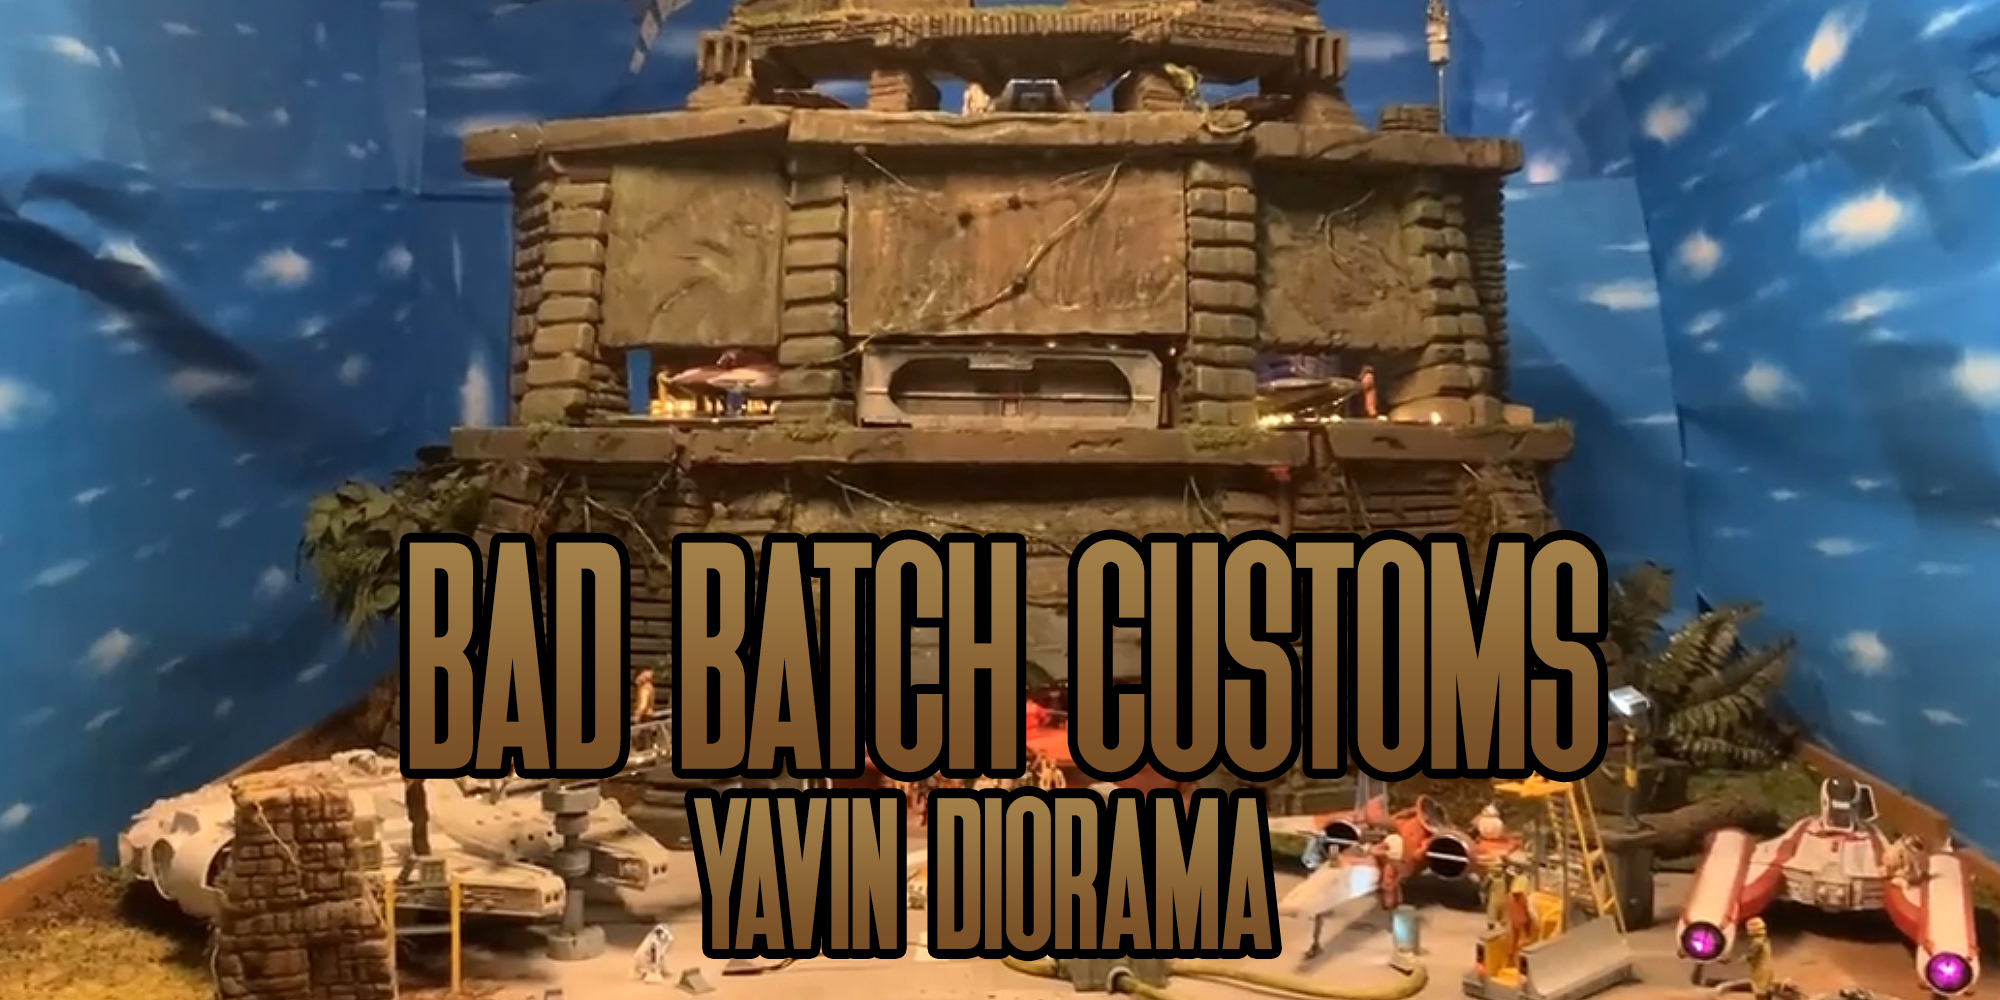 Bad Batch Customs Yavin Diorama